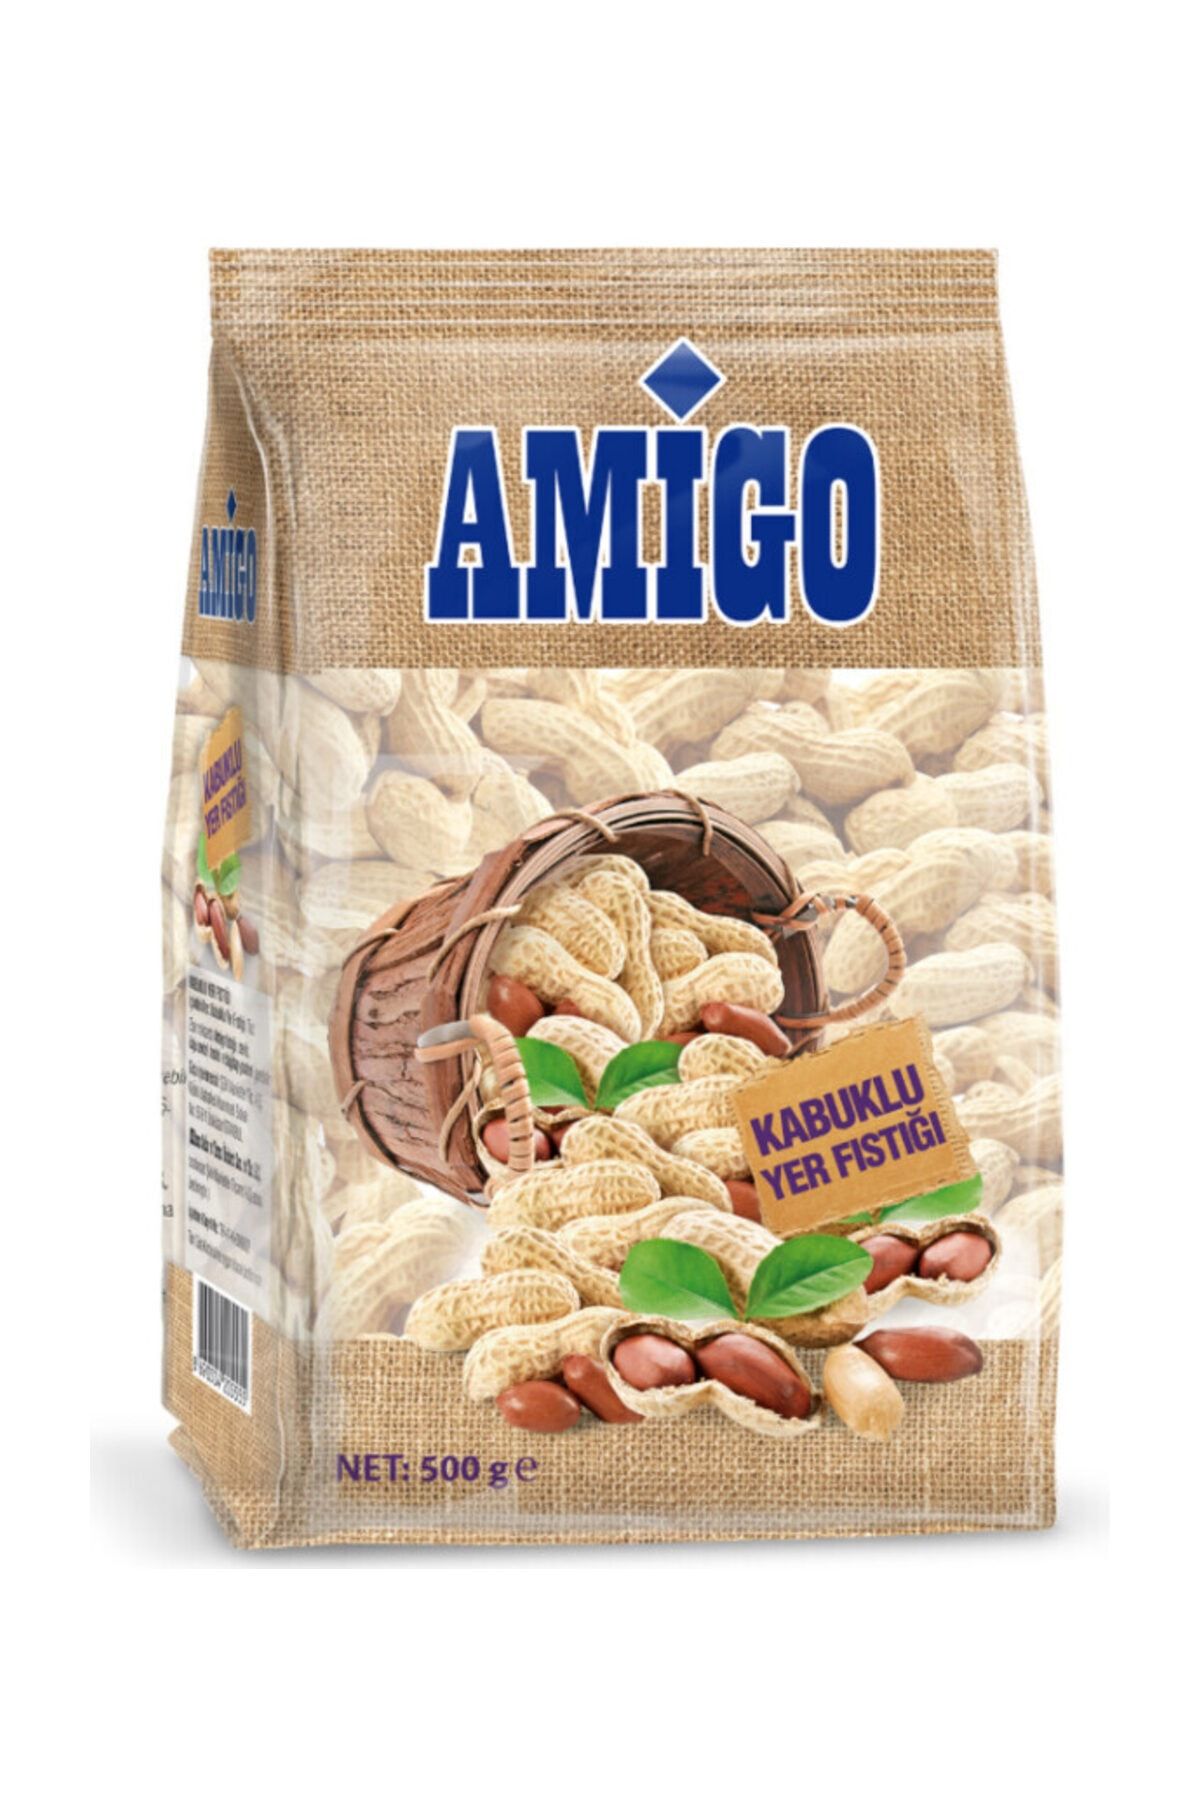 Amigo Kabuklu Yer Fıstığı 500 gr